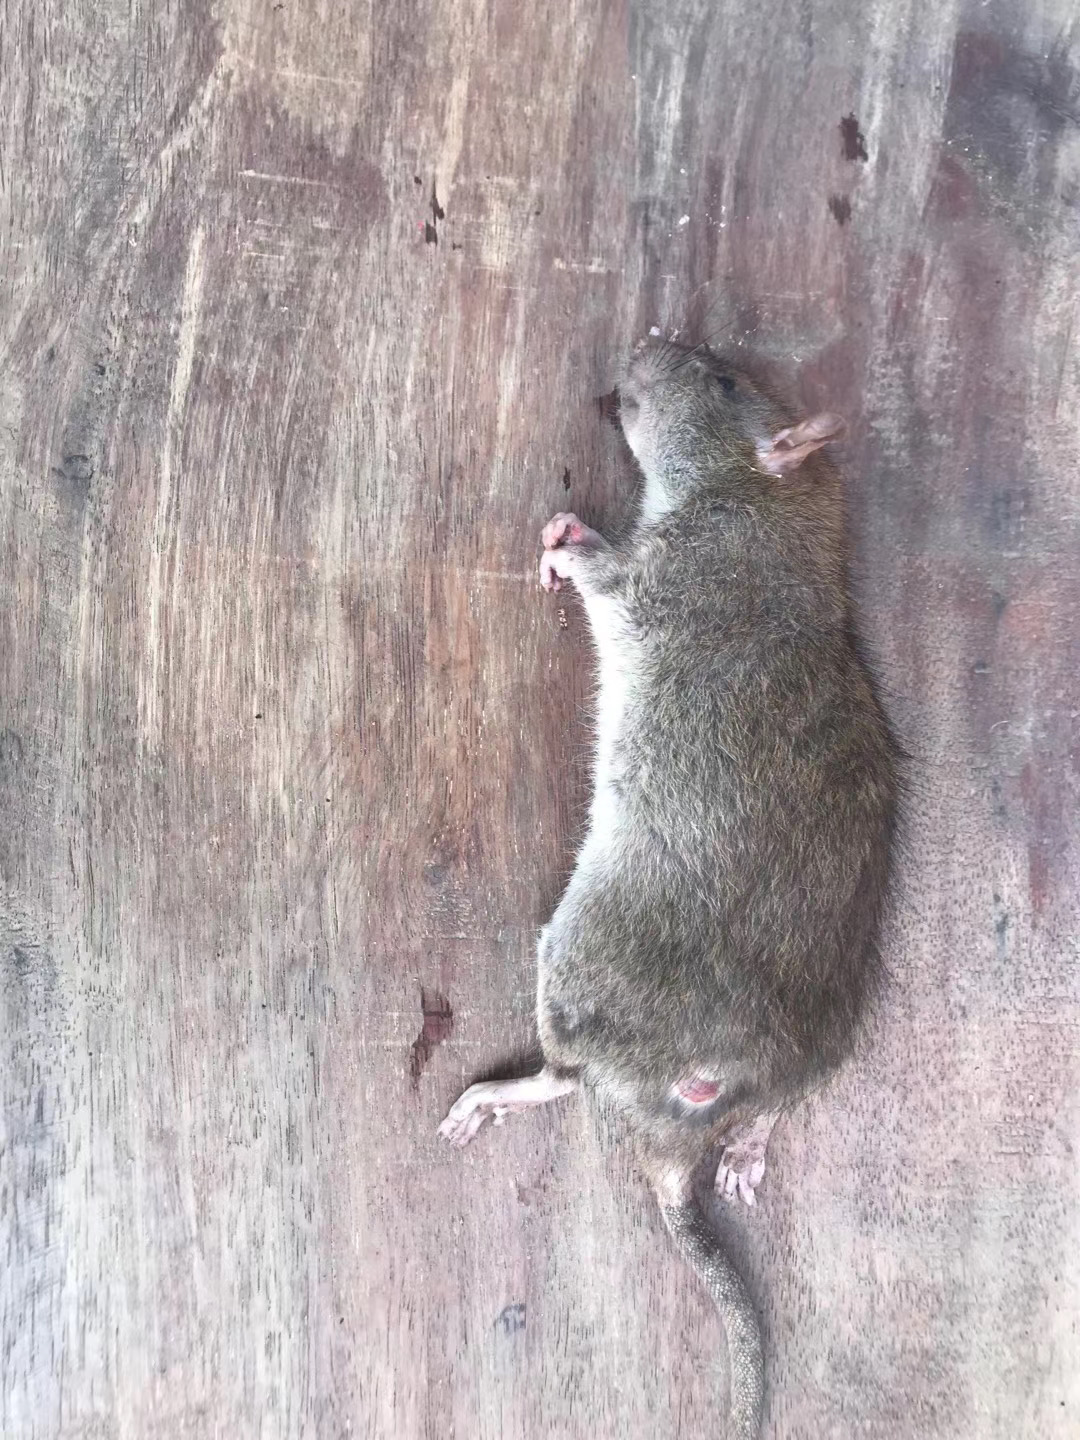 坦洲鼠类防治 坦洲灭鼠公司 坦洲快速灭鼠